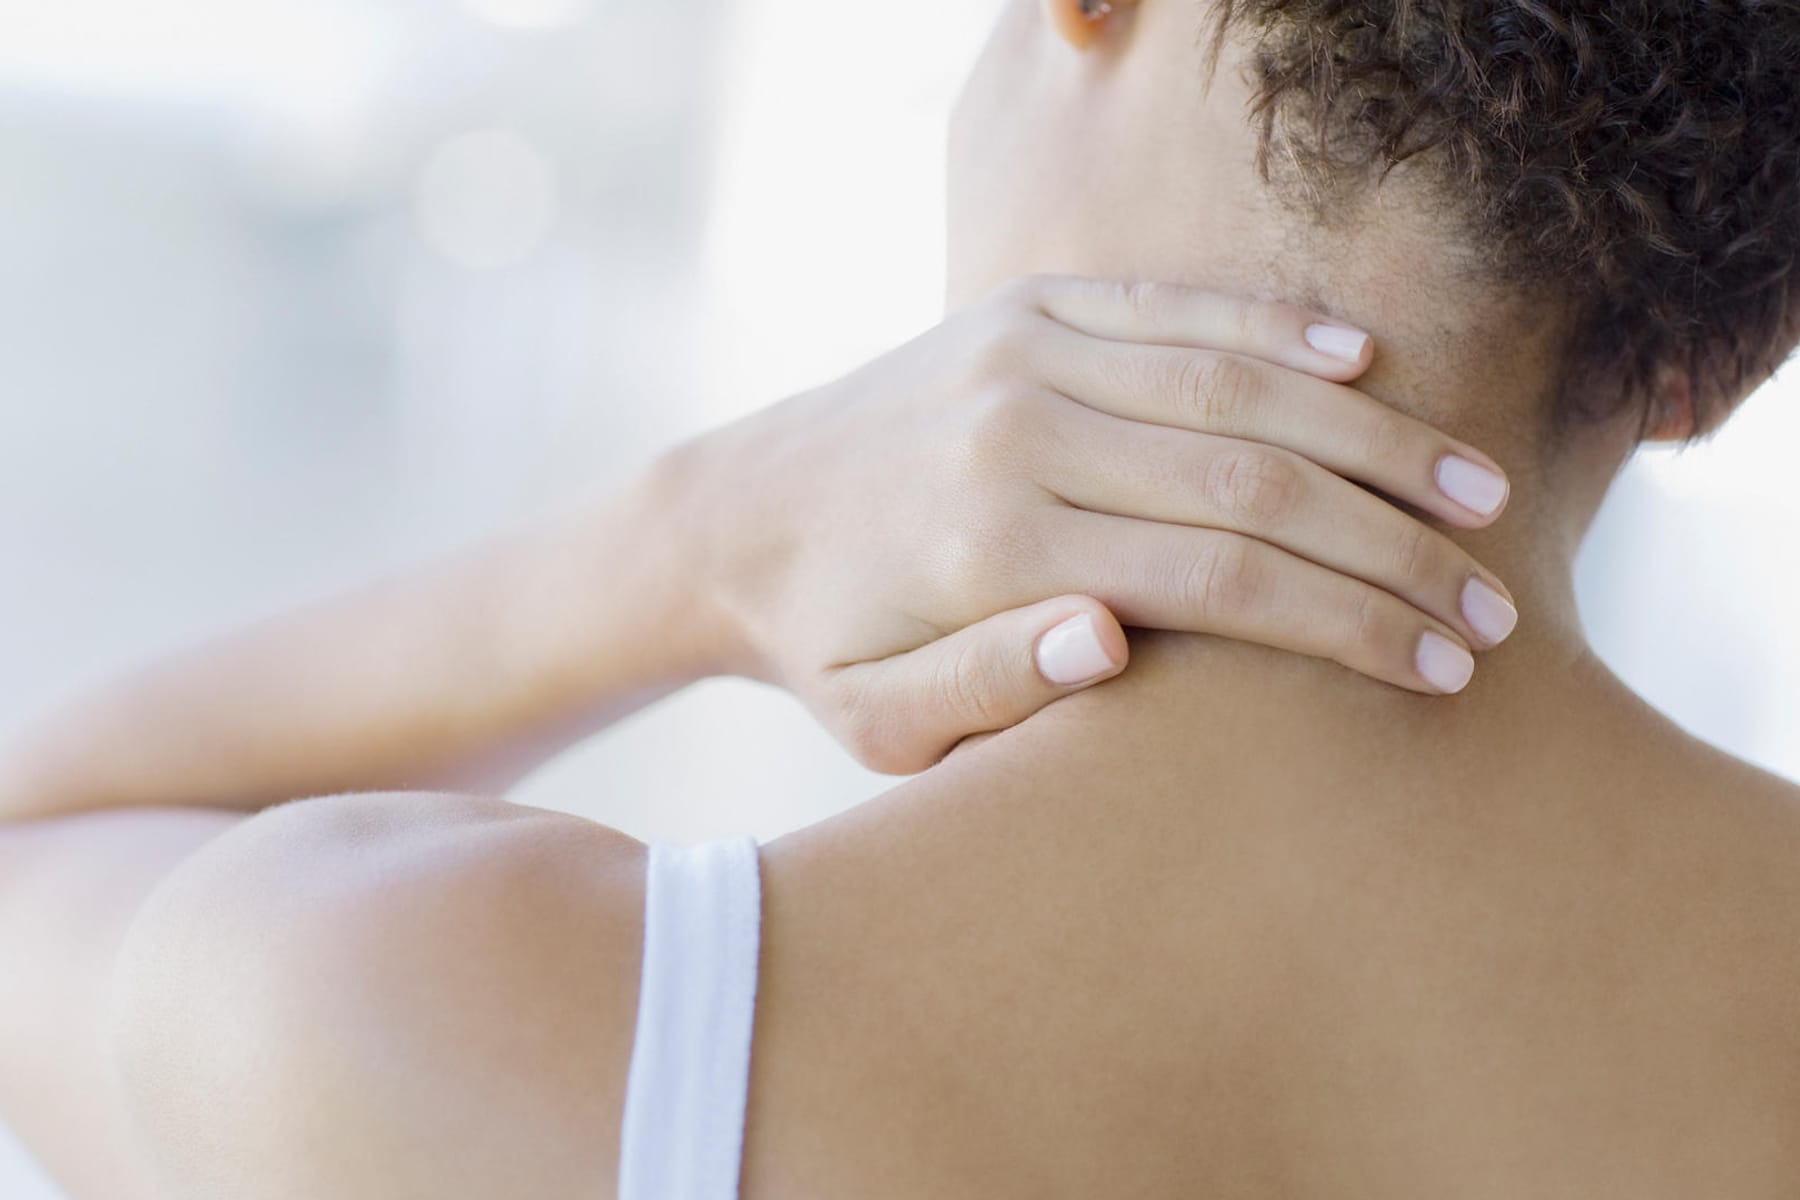 Nackenschmerzen - Ursachen, Symptome und Bekämpfung